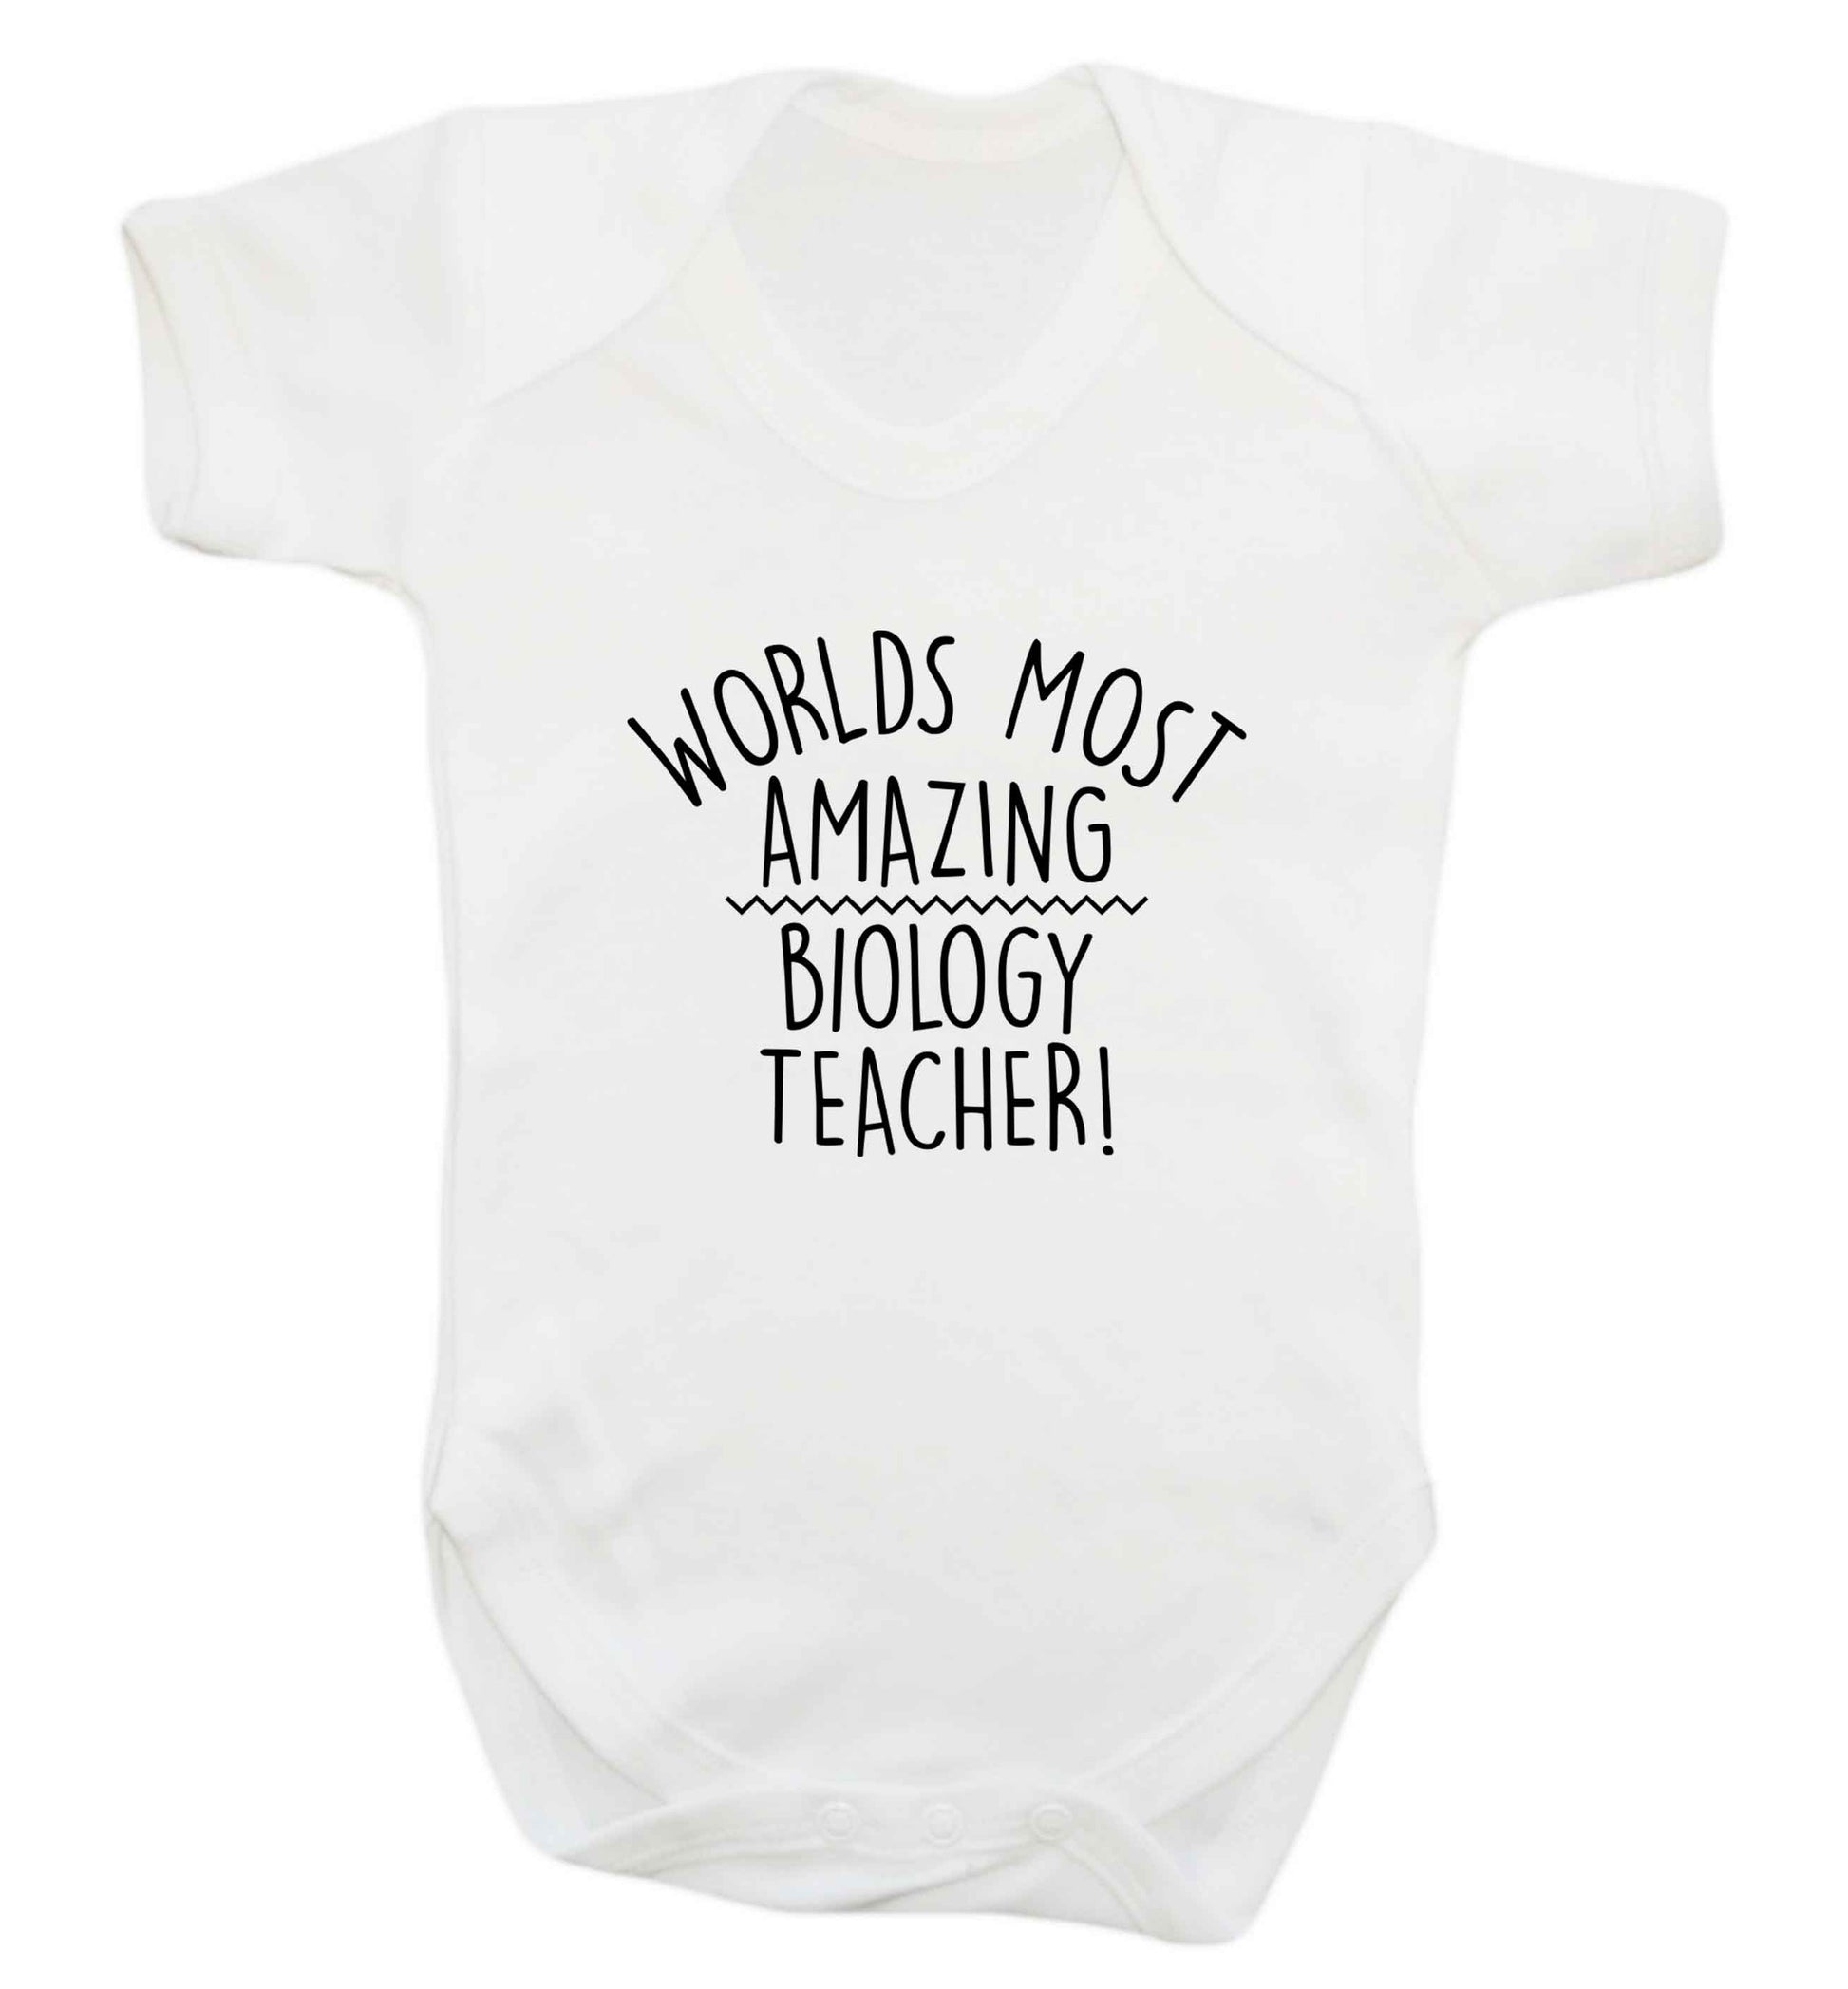 Worlds most amazing biology teacher baby vest white 18-24 months